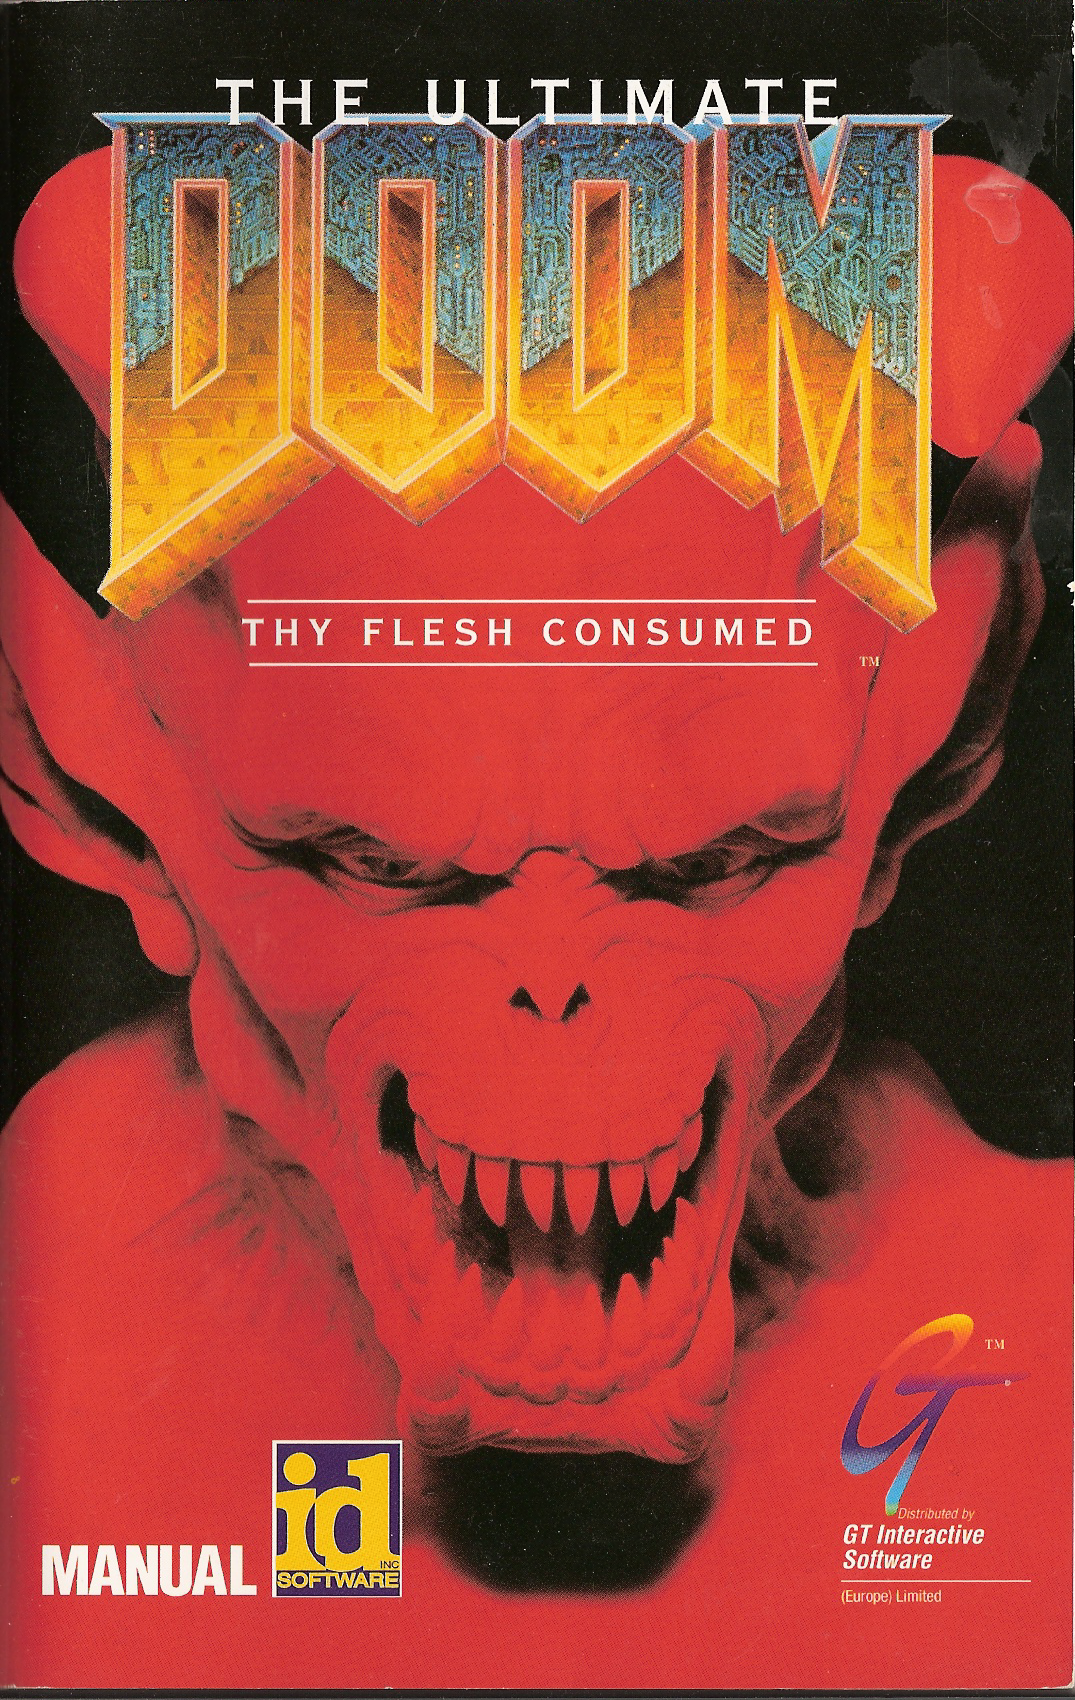 original doom cover art